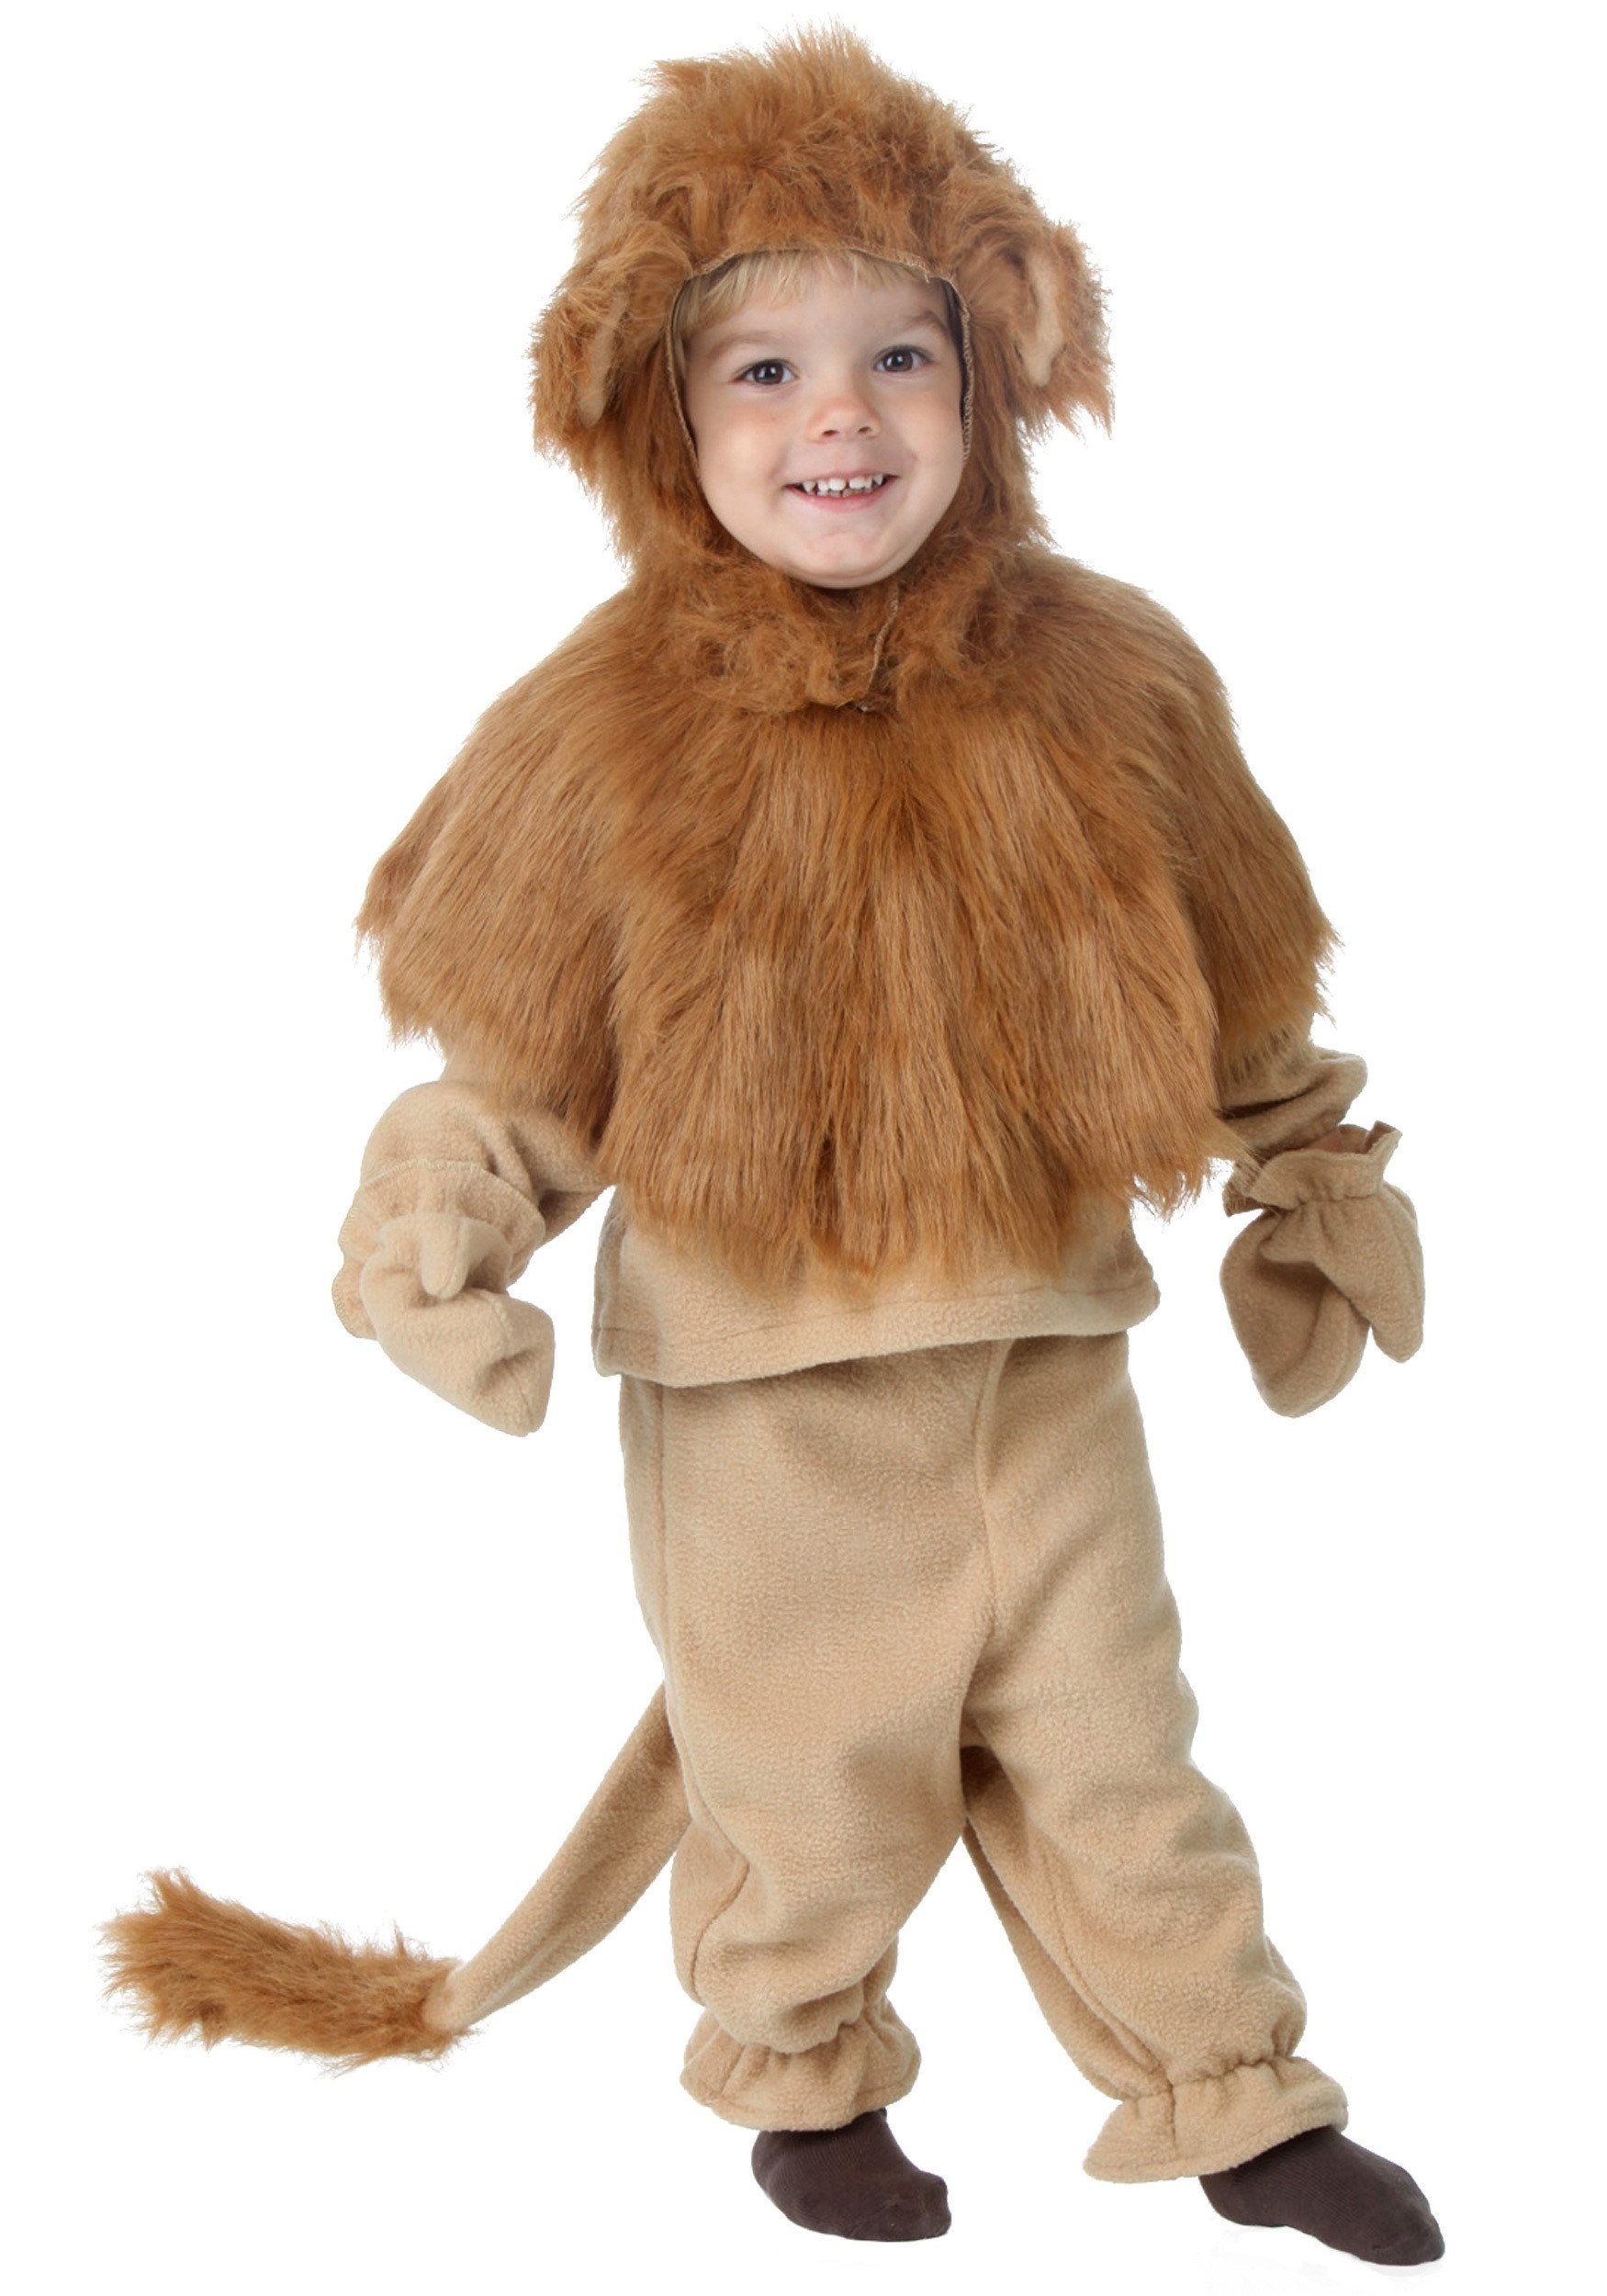 DIY Lion Costume For Toddler
 Infant Toddler Storybook Lion Costume